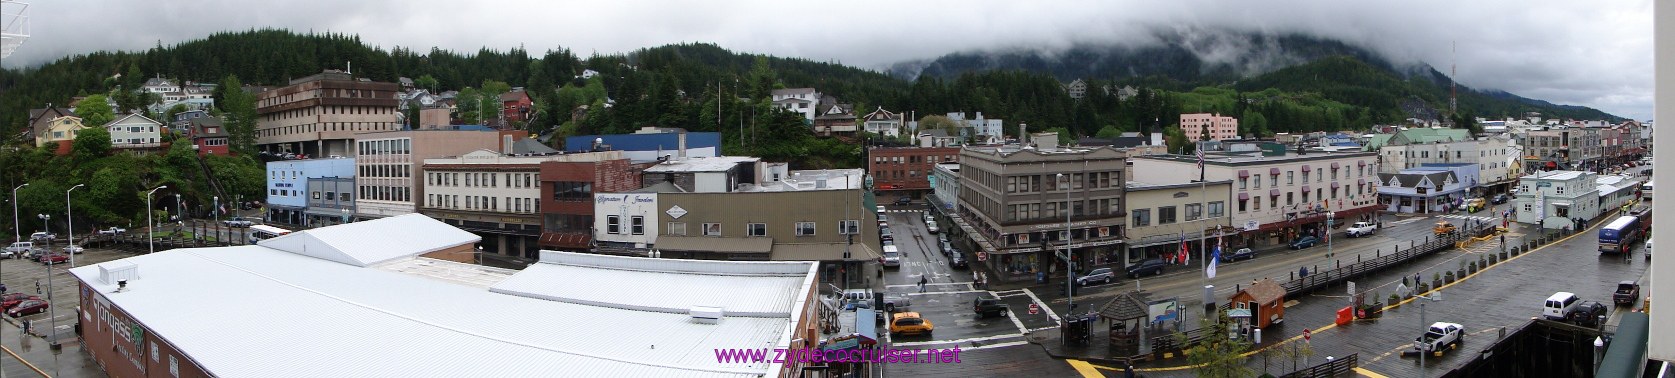 085: Carnival Spirit, Alaska, Ketchikan, Panoramic view of Ketchikan from our balcony - Carnival Spirit